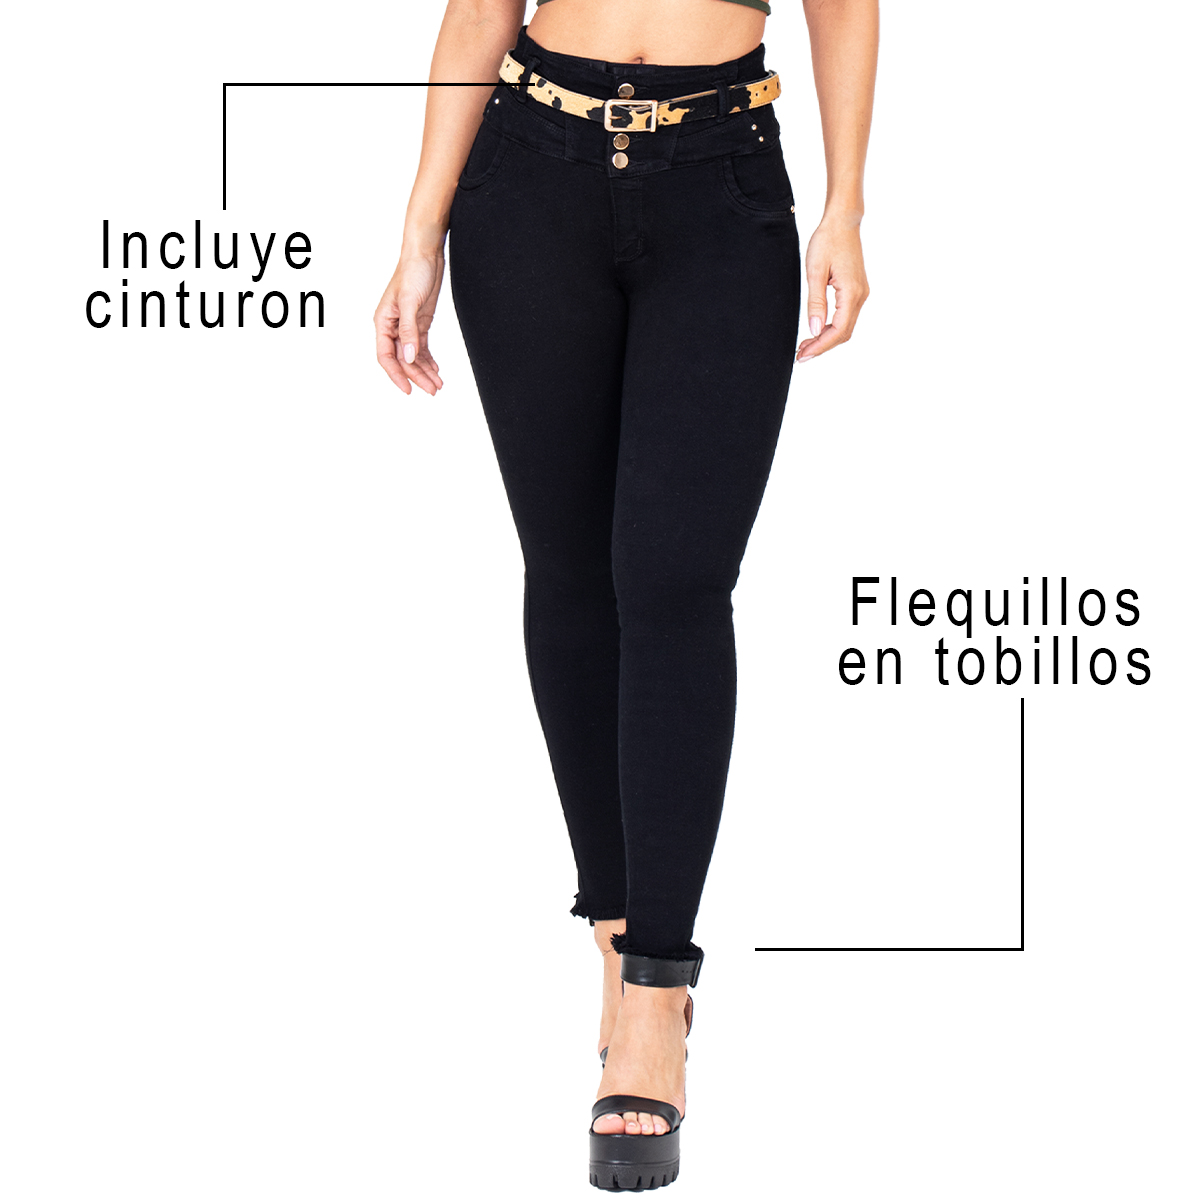 EL jean colombiano faja interna incluída cuenta con de tres niveles de broches que ayuda a controlar el abdomen. Realza tus curvas